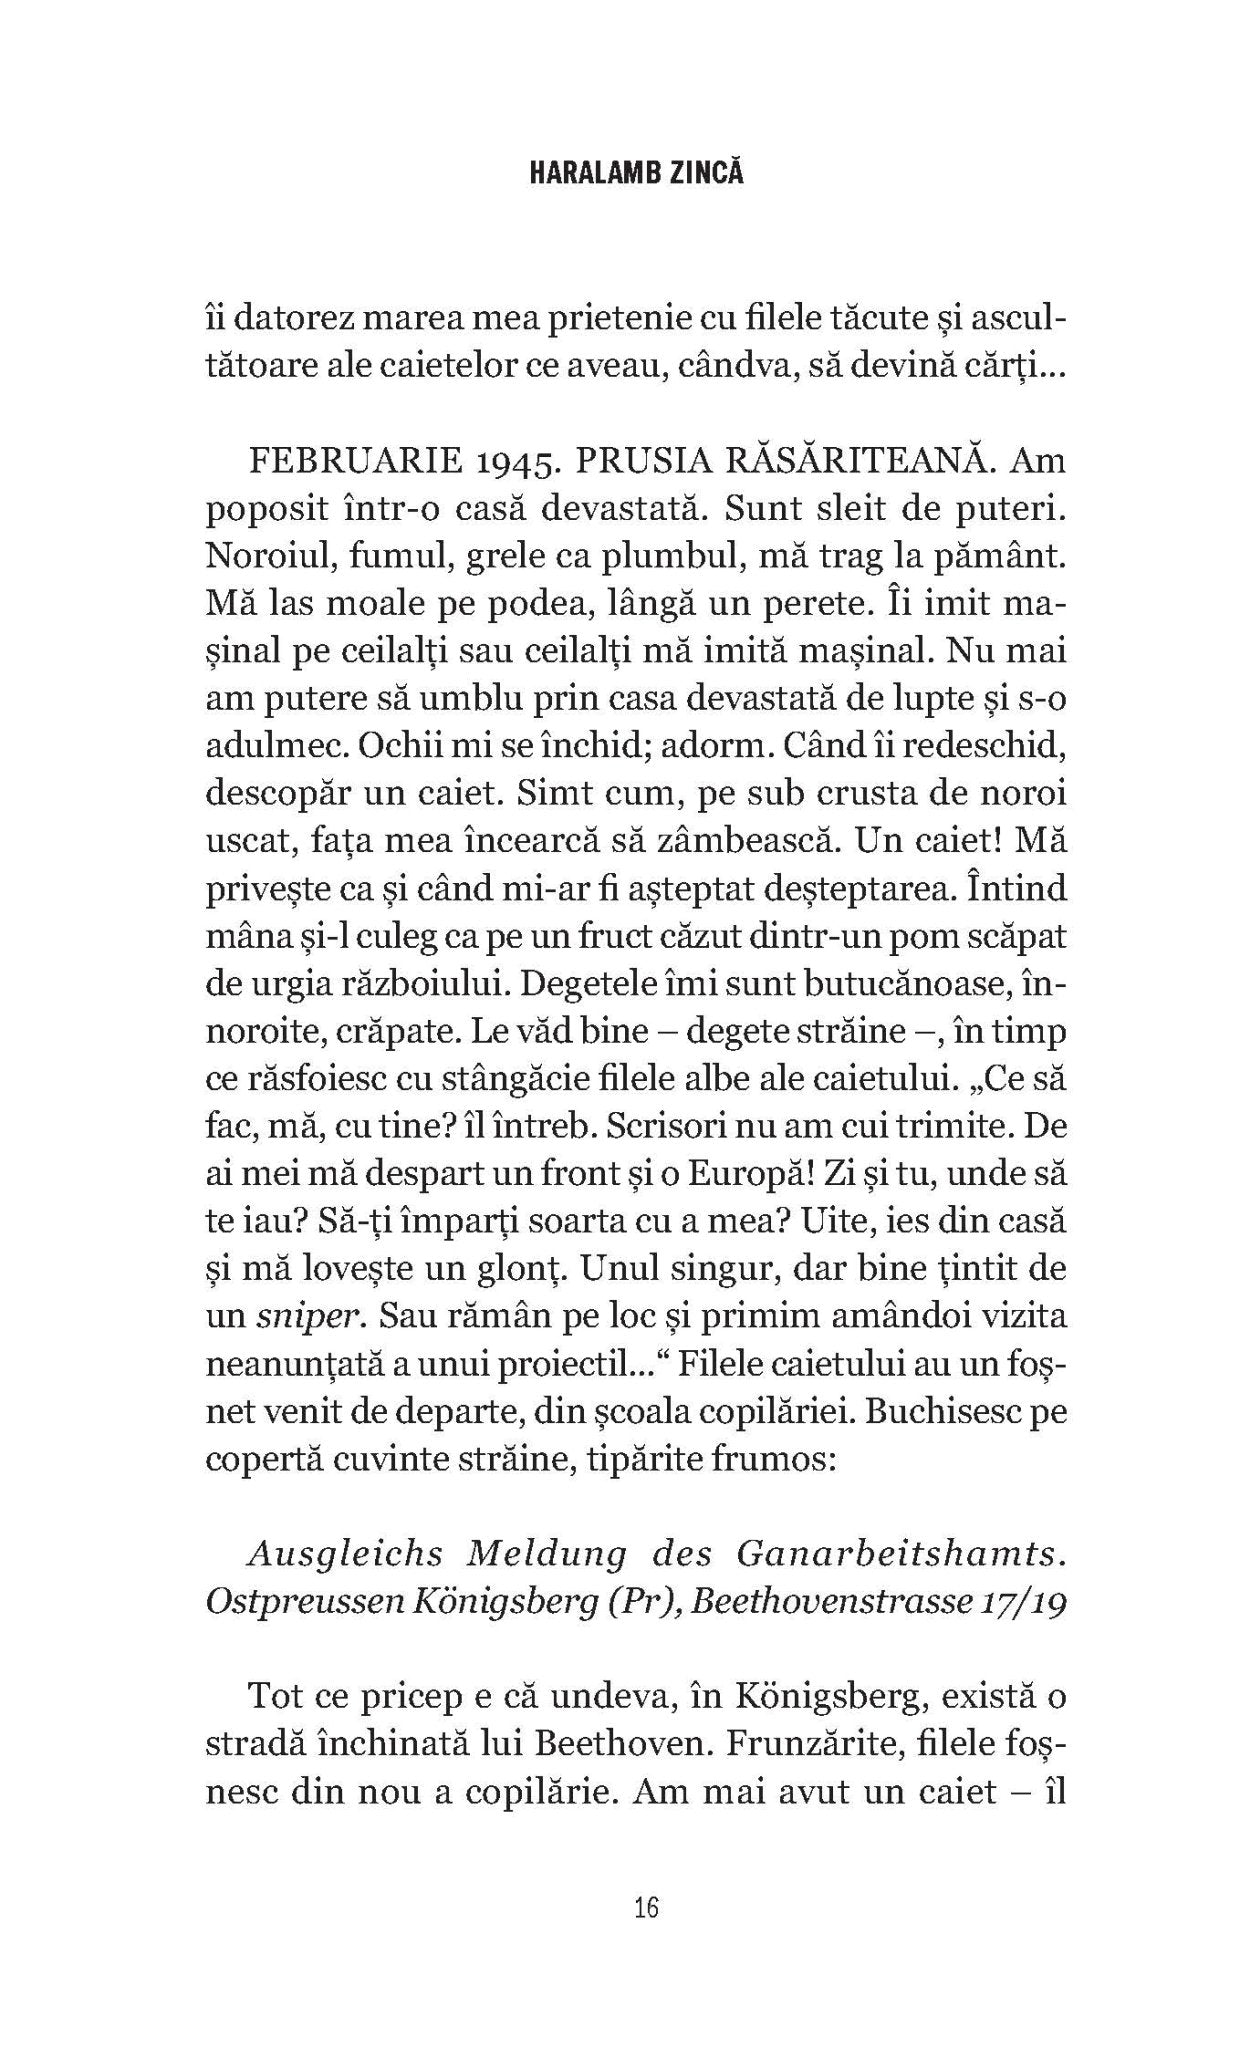 Fiecare om cu clepsidra lui (autobiografie)  - Publisol.ro